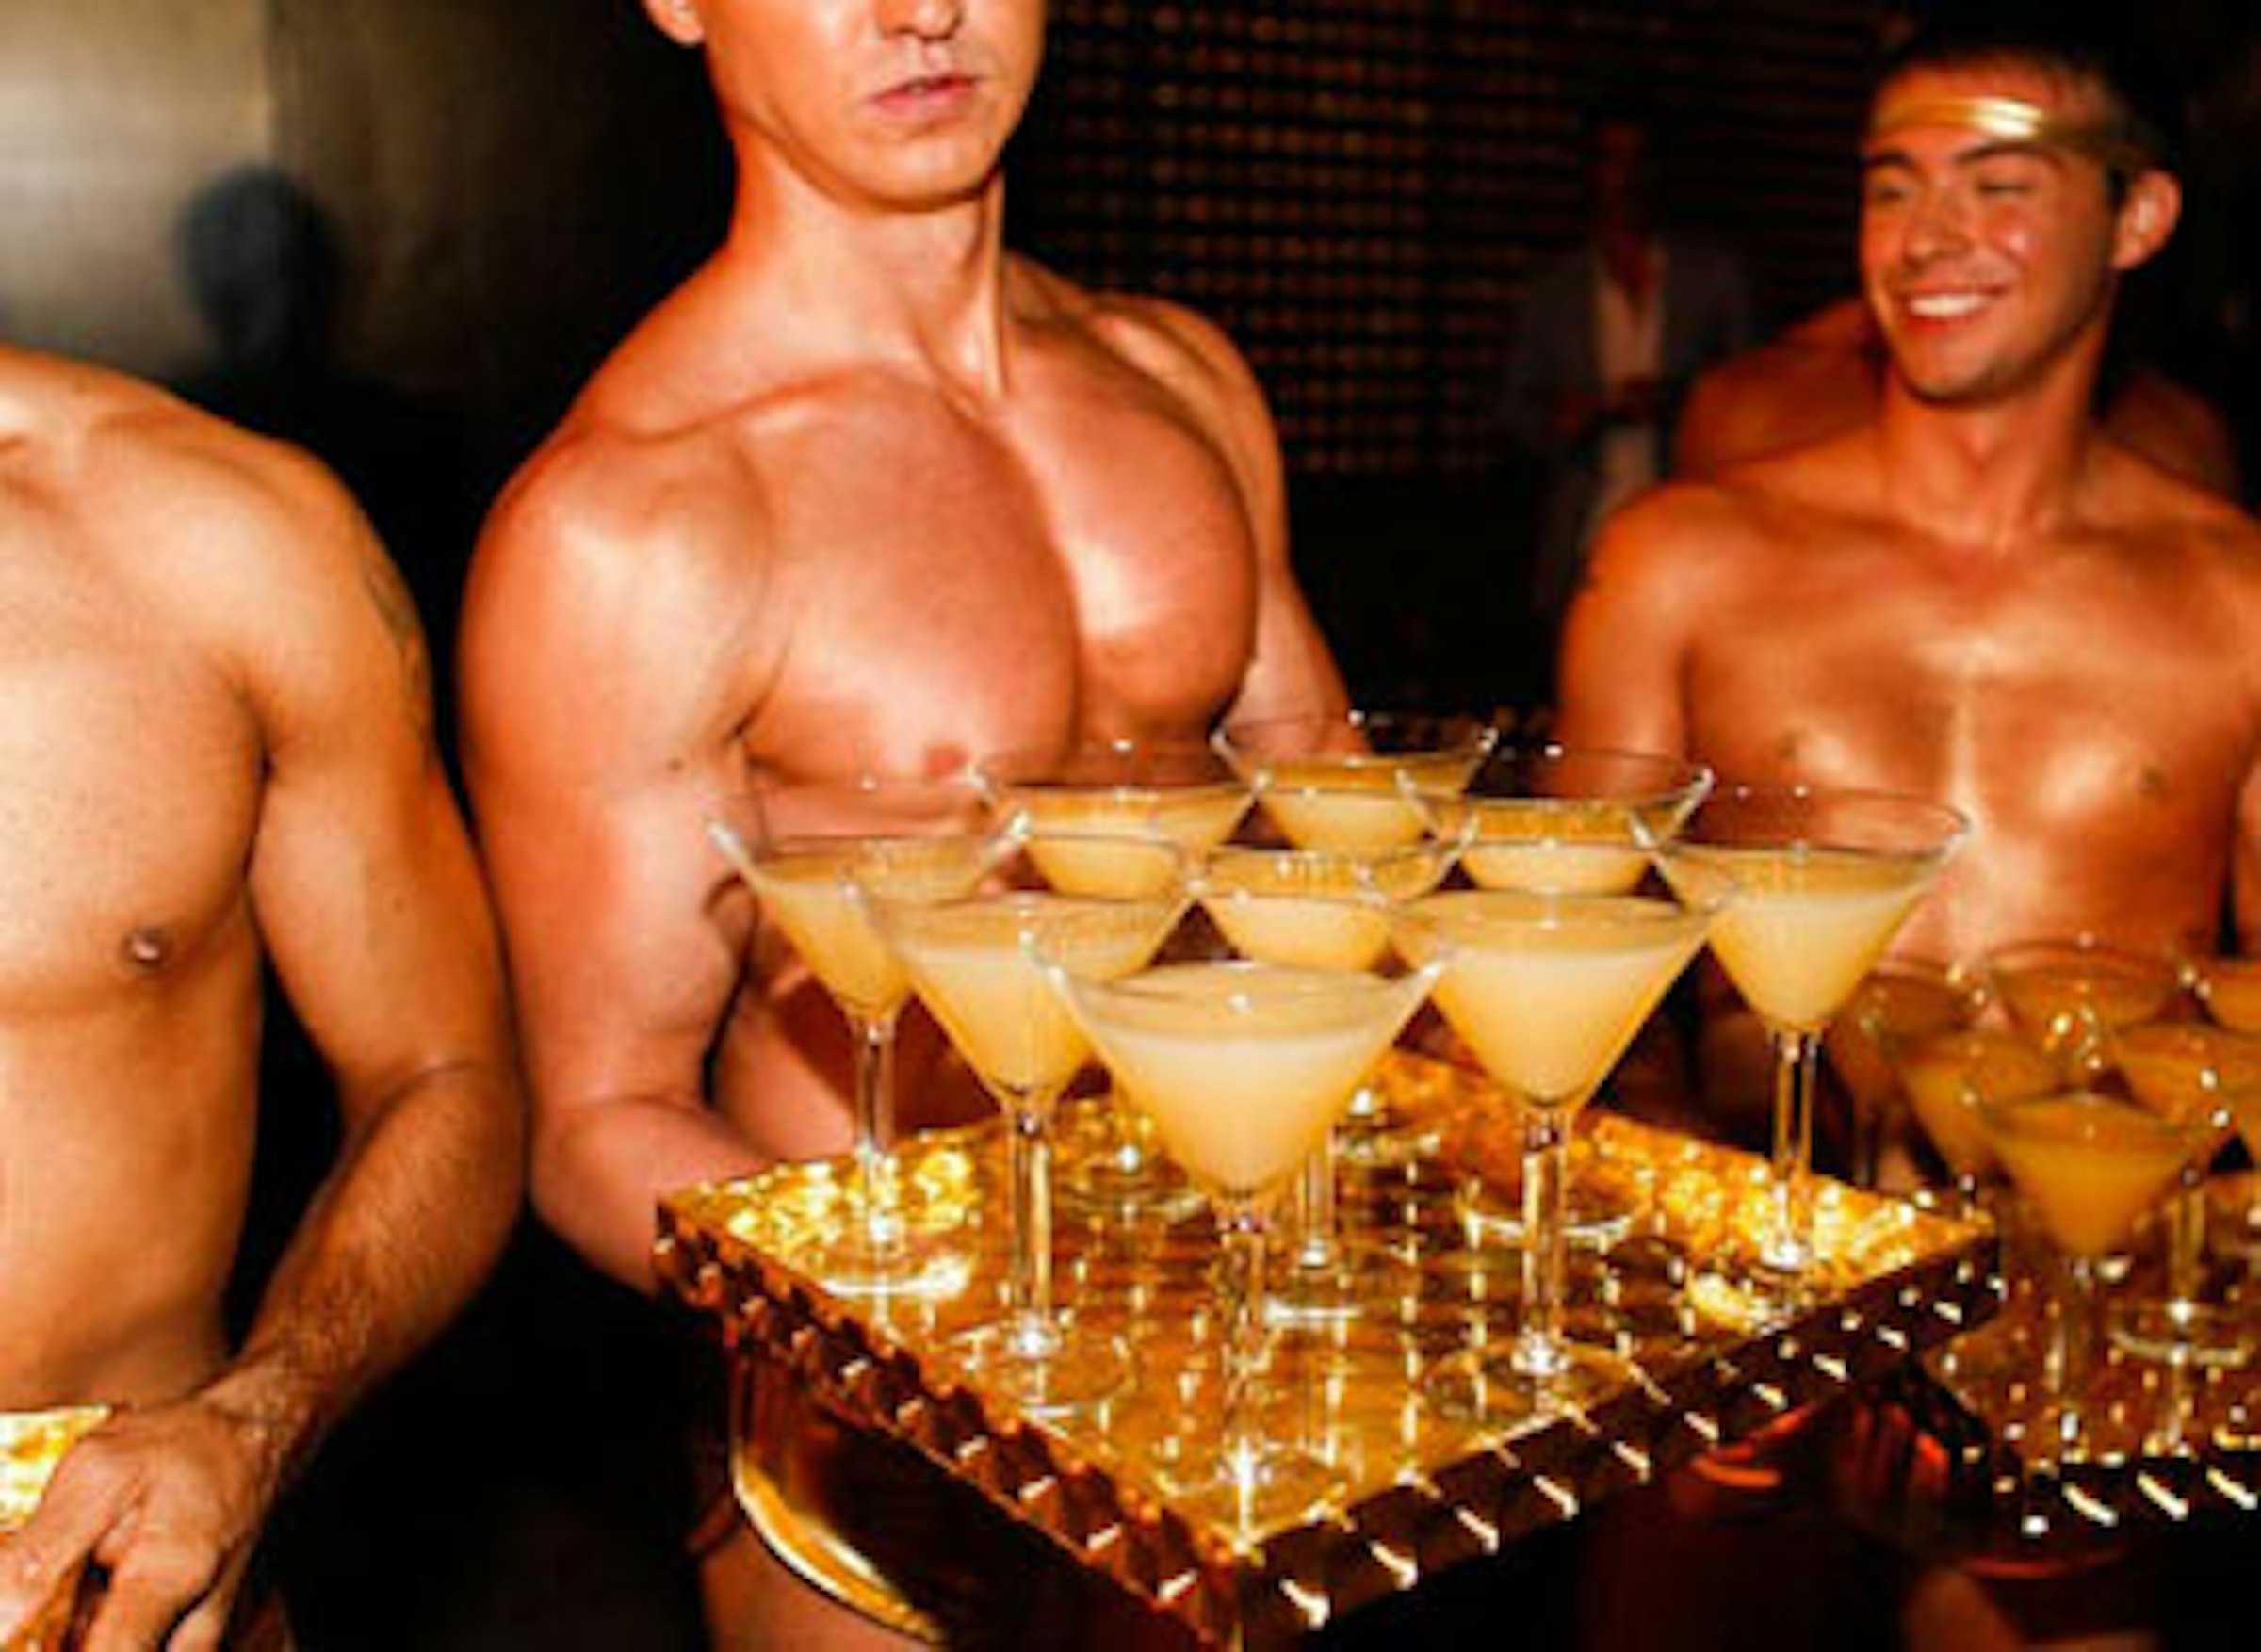 геи в баре онлайн фото 101